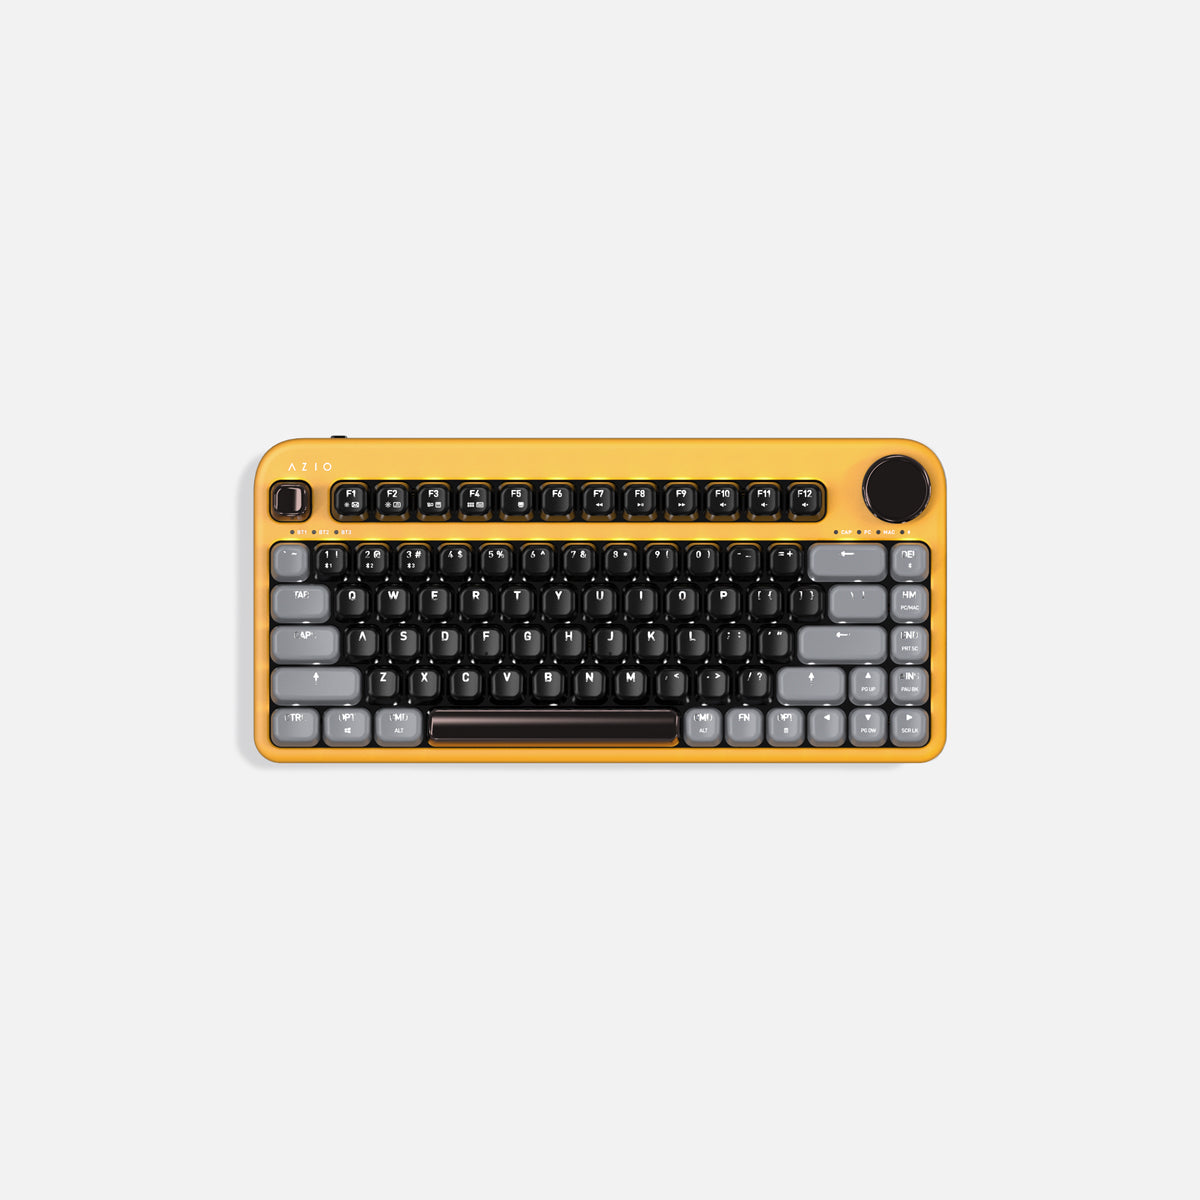 Keyboard nirkabel Izo (tombol merah)